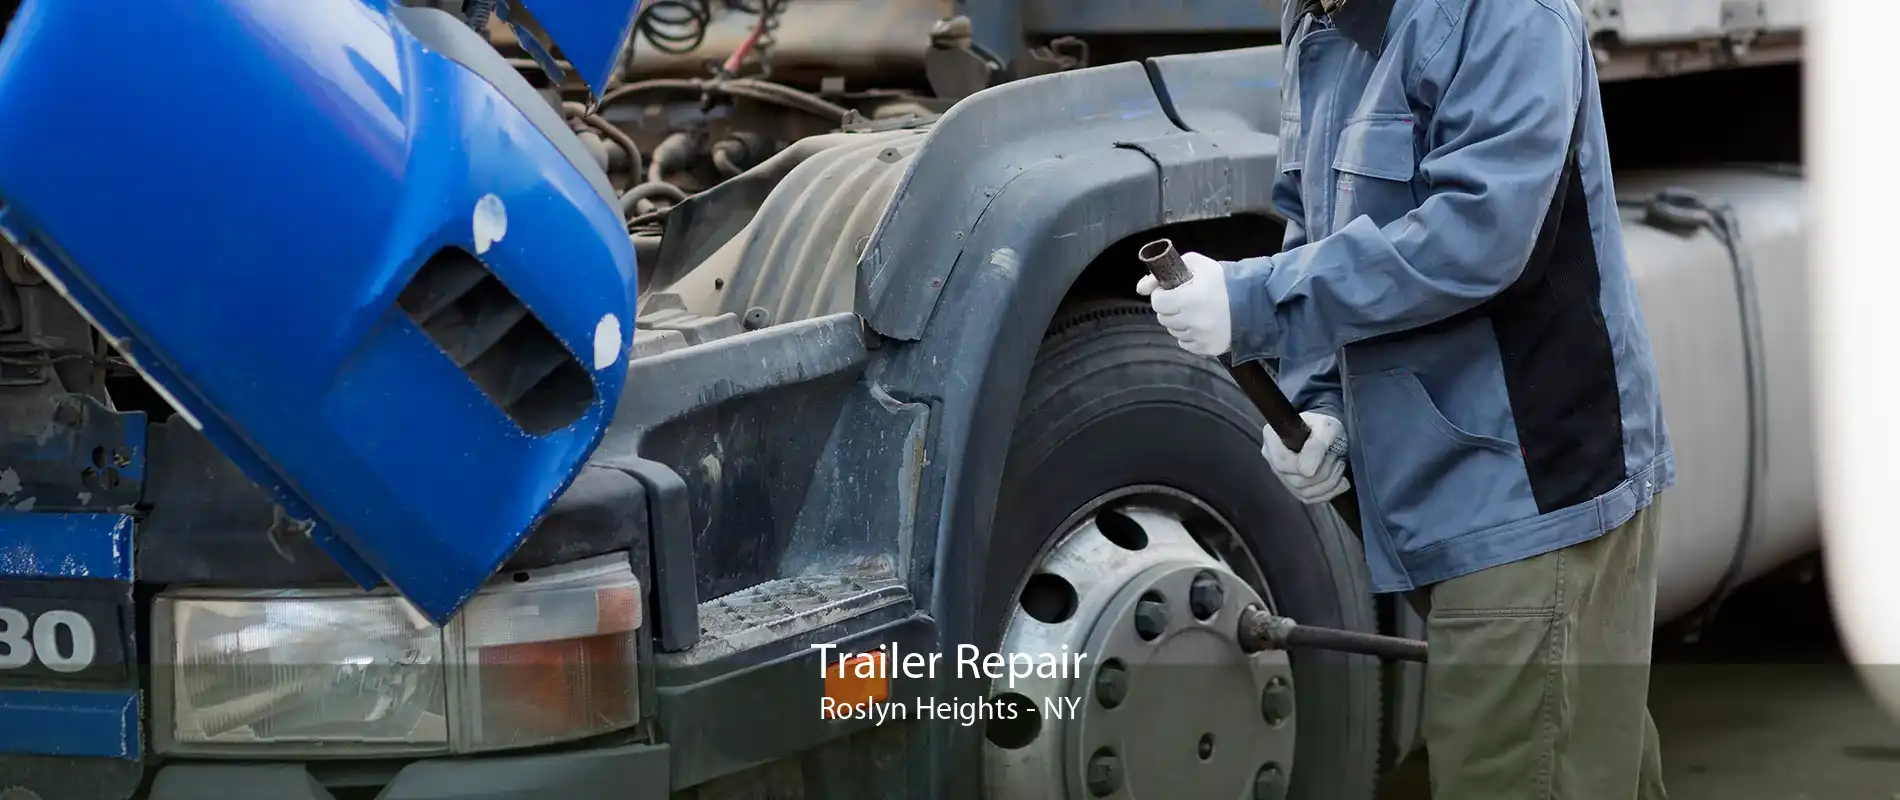 Trailer Repair Roslyn Heights - NY